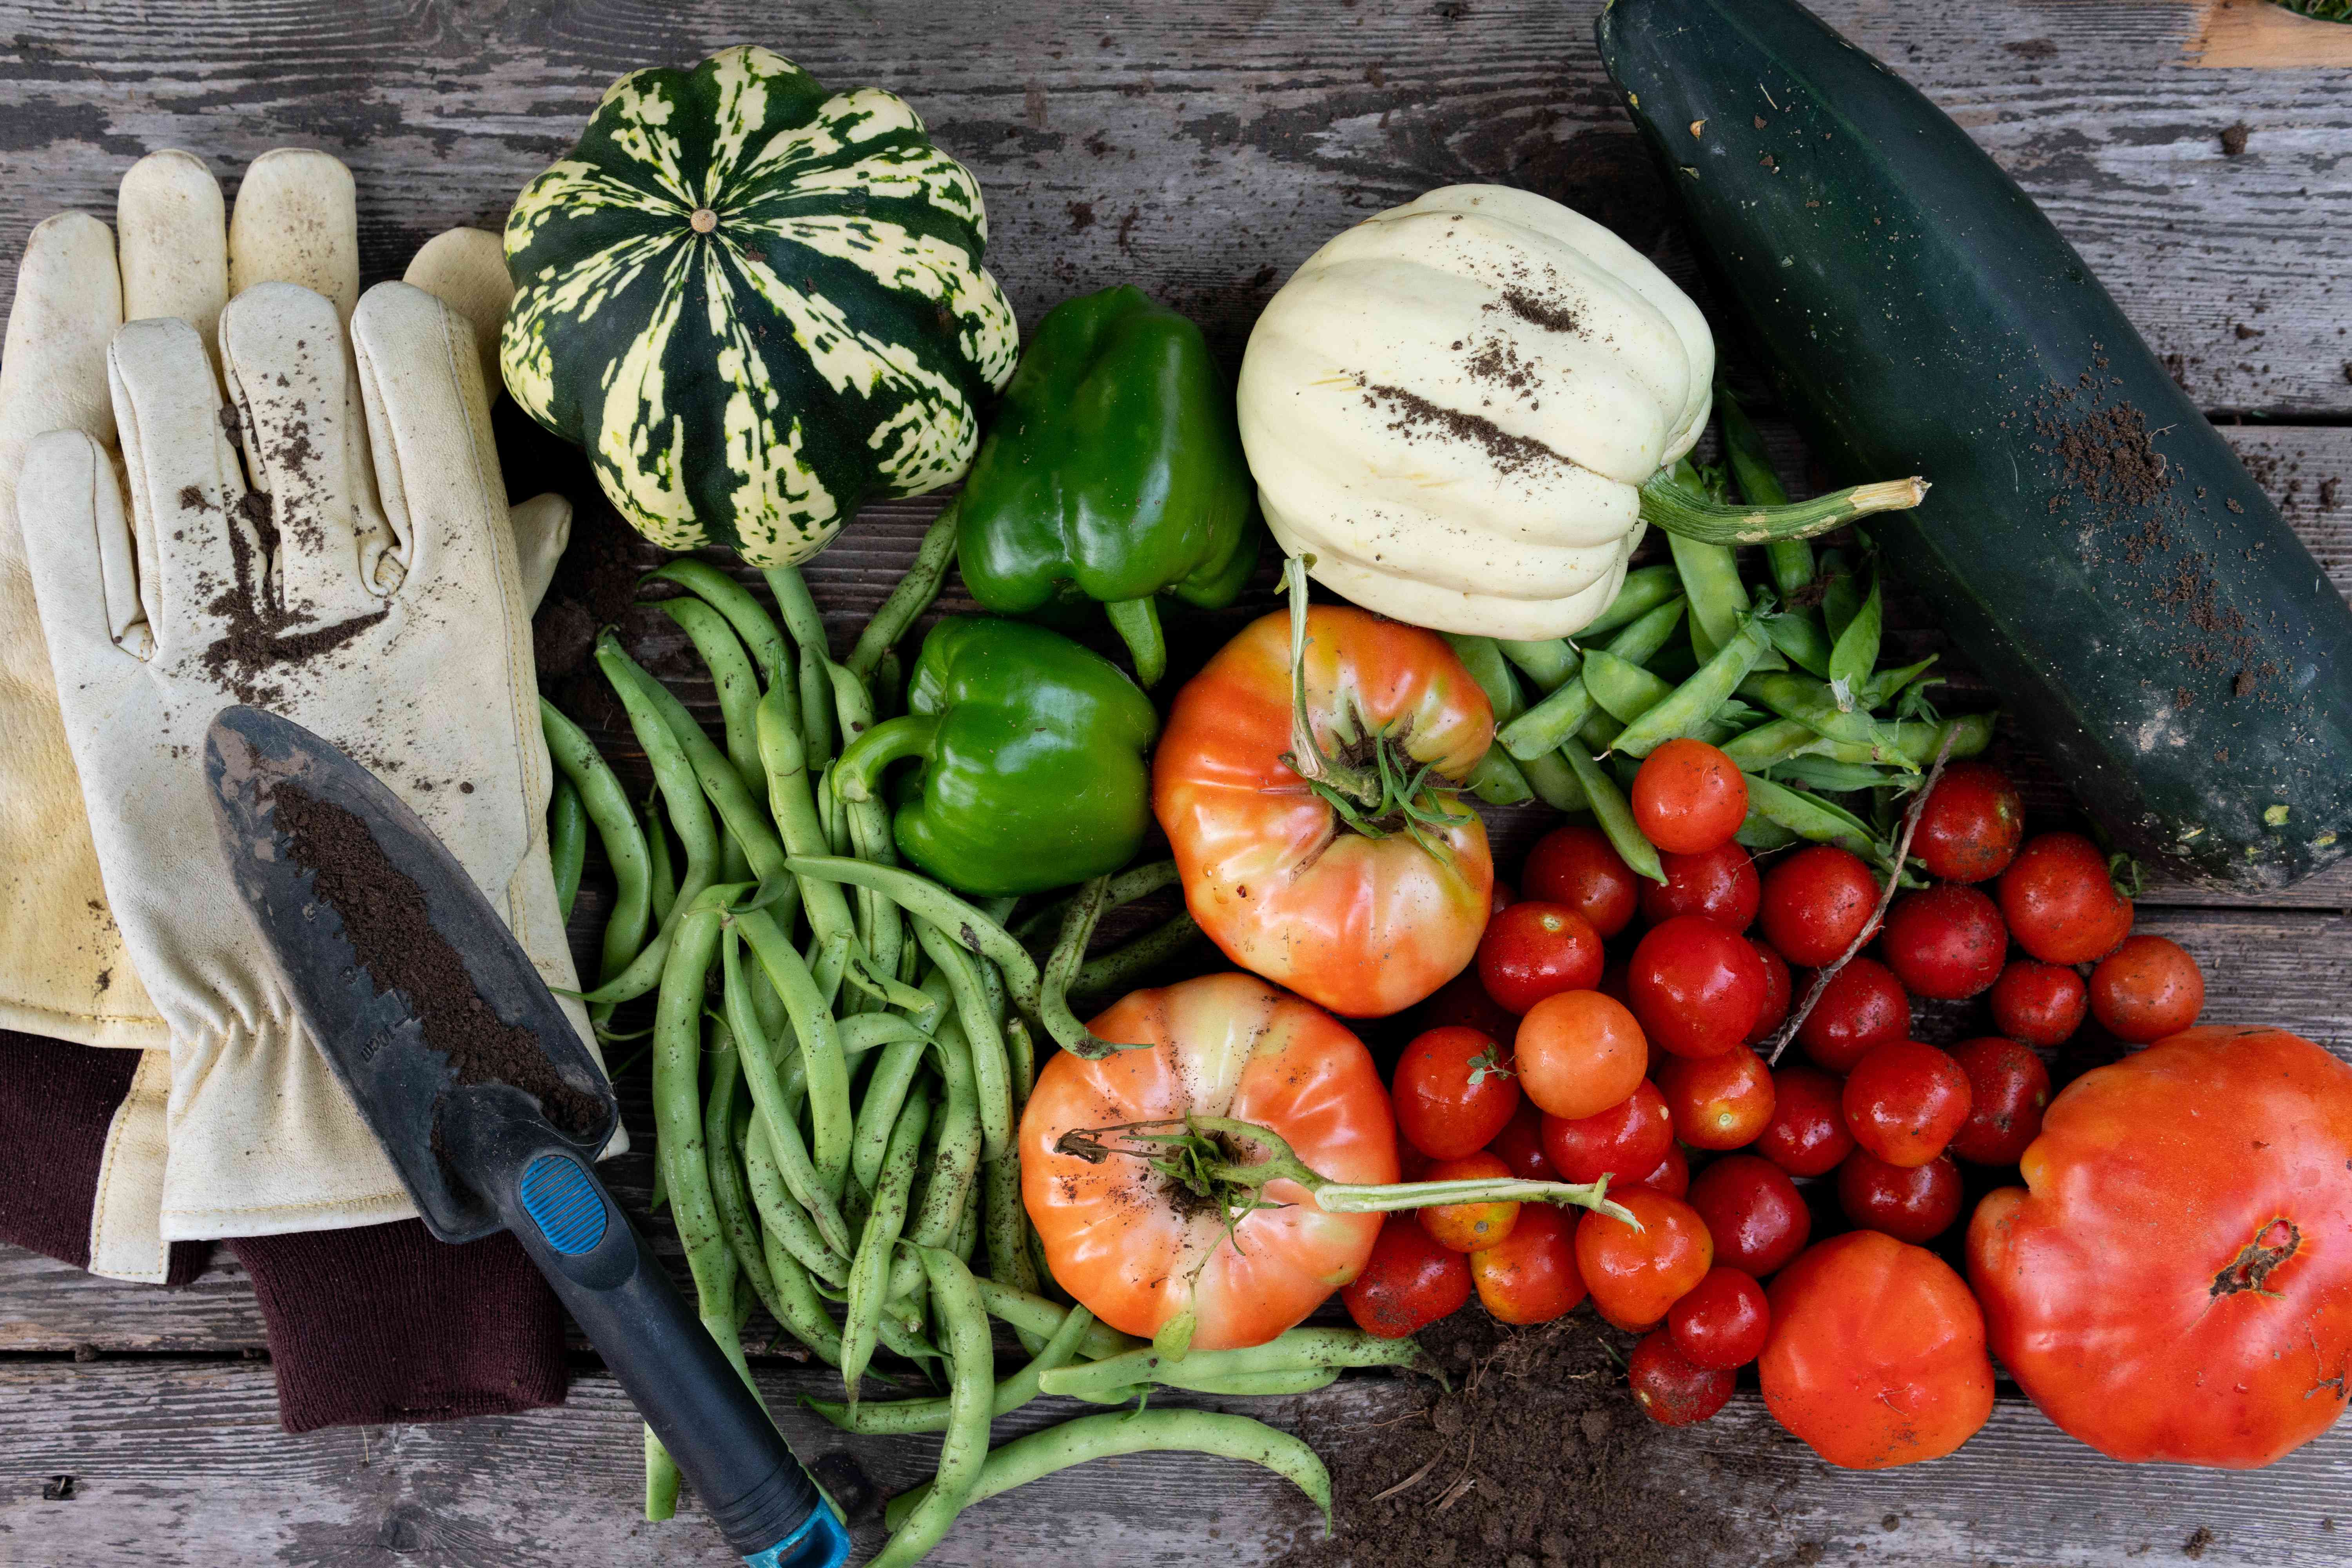 花园蔬菜和园艺工具的俯拍